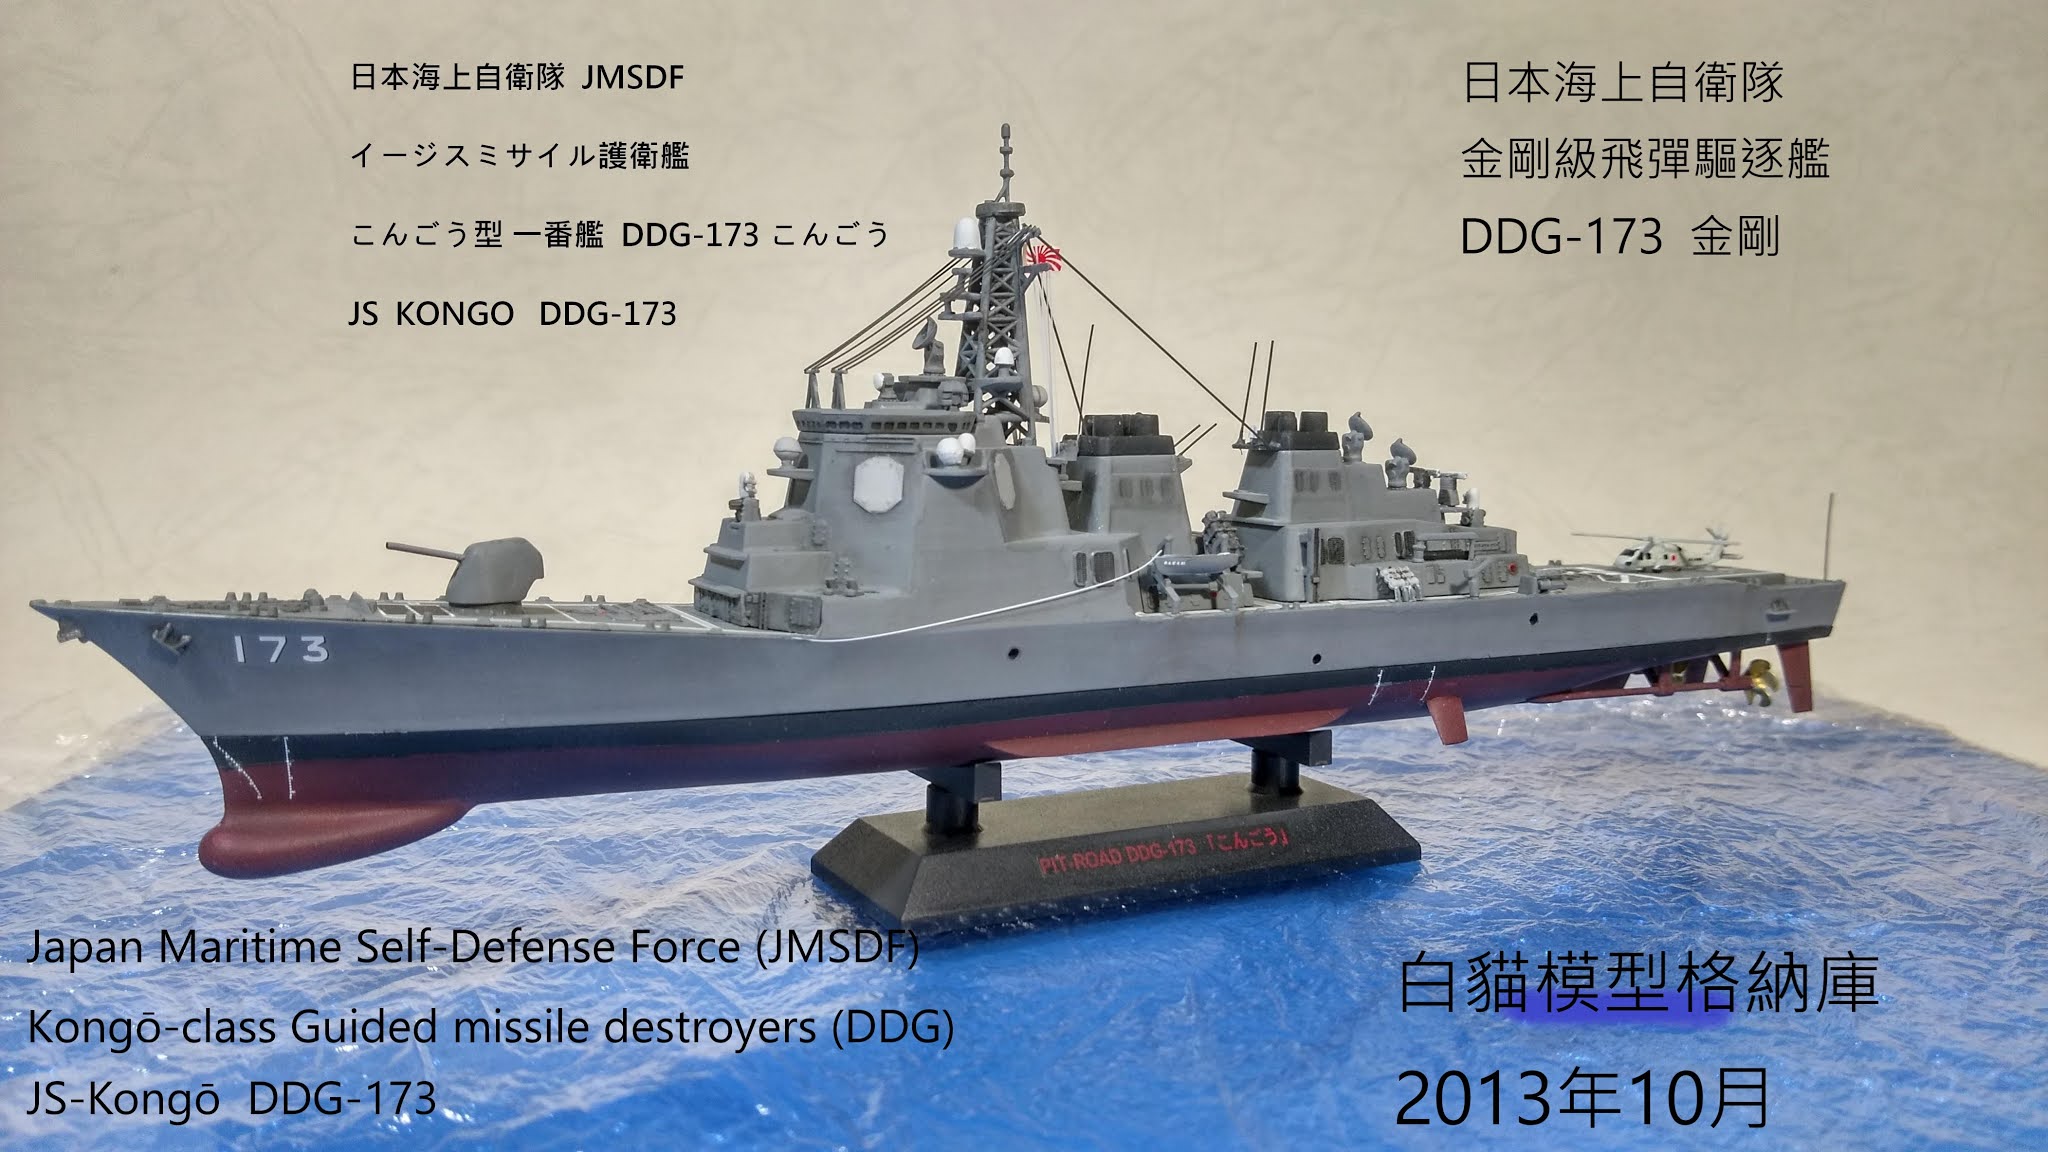 白貓模型格納庫: DDG-173 こんごうイージスミサイル護衛艦日本海上 